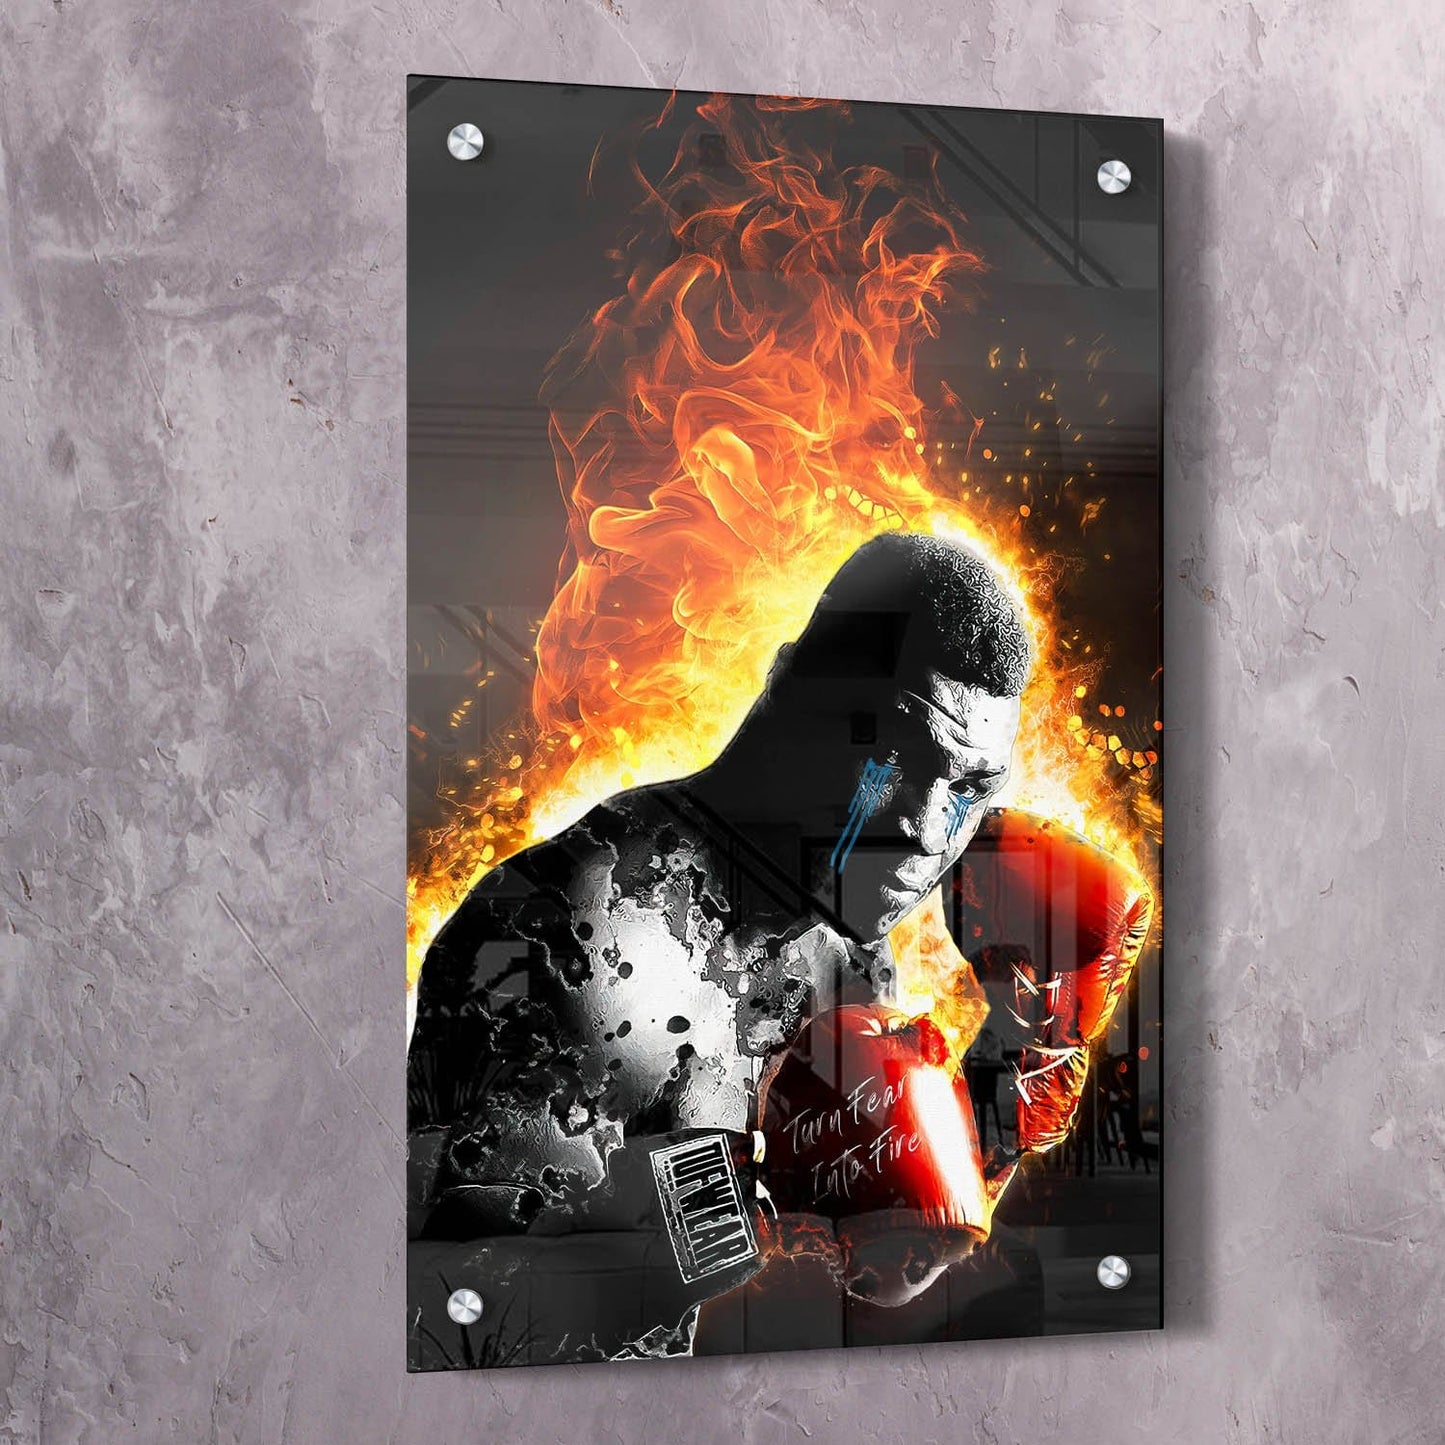 Mike Tyson Turn Fear Into Fire Wall Art | Inspirational Wall Art Motivational Wall Art Quotes Office Art | ImpaktMaker Exclusive Canvas Art Portrait